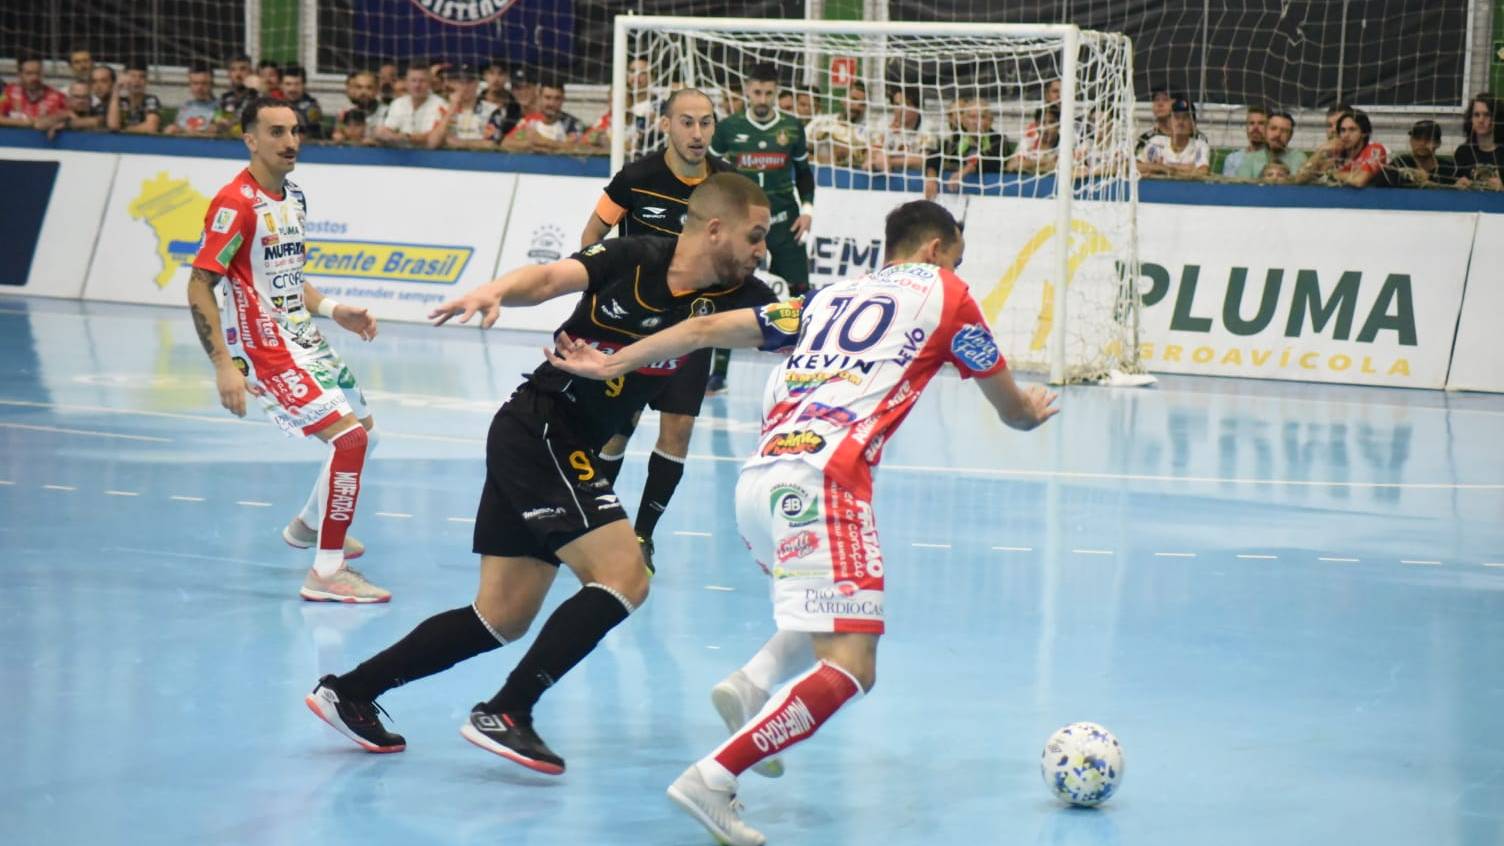 Em jogo com paradas por problemas no ginásio, Cascavel Futsal vence Sorocaba